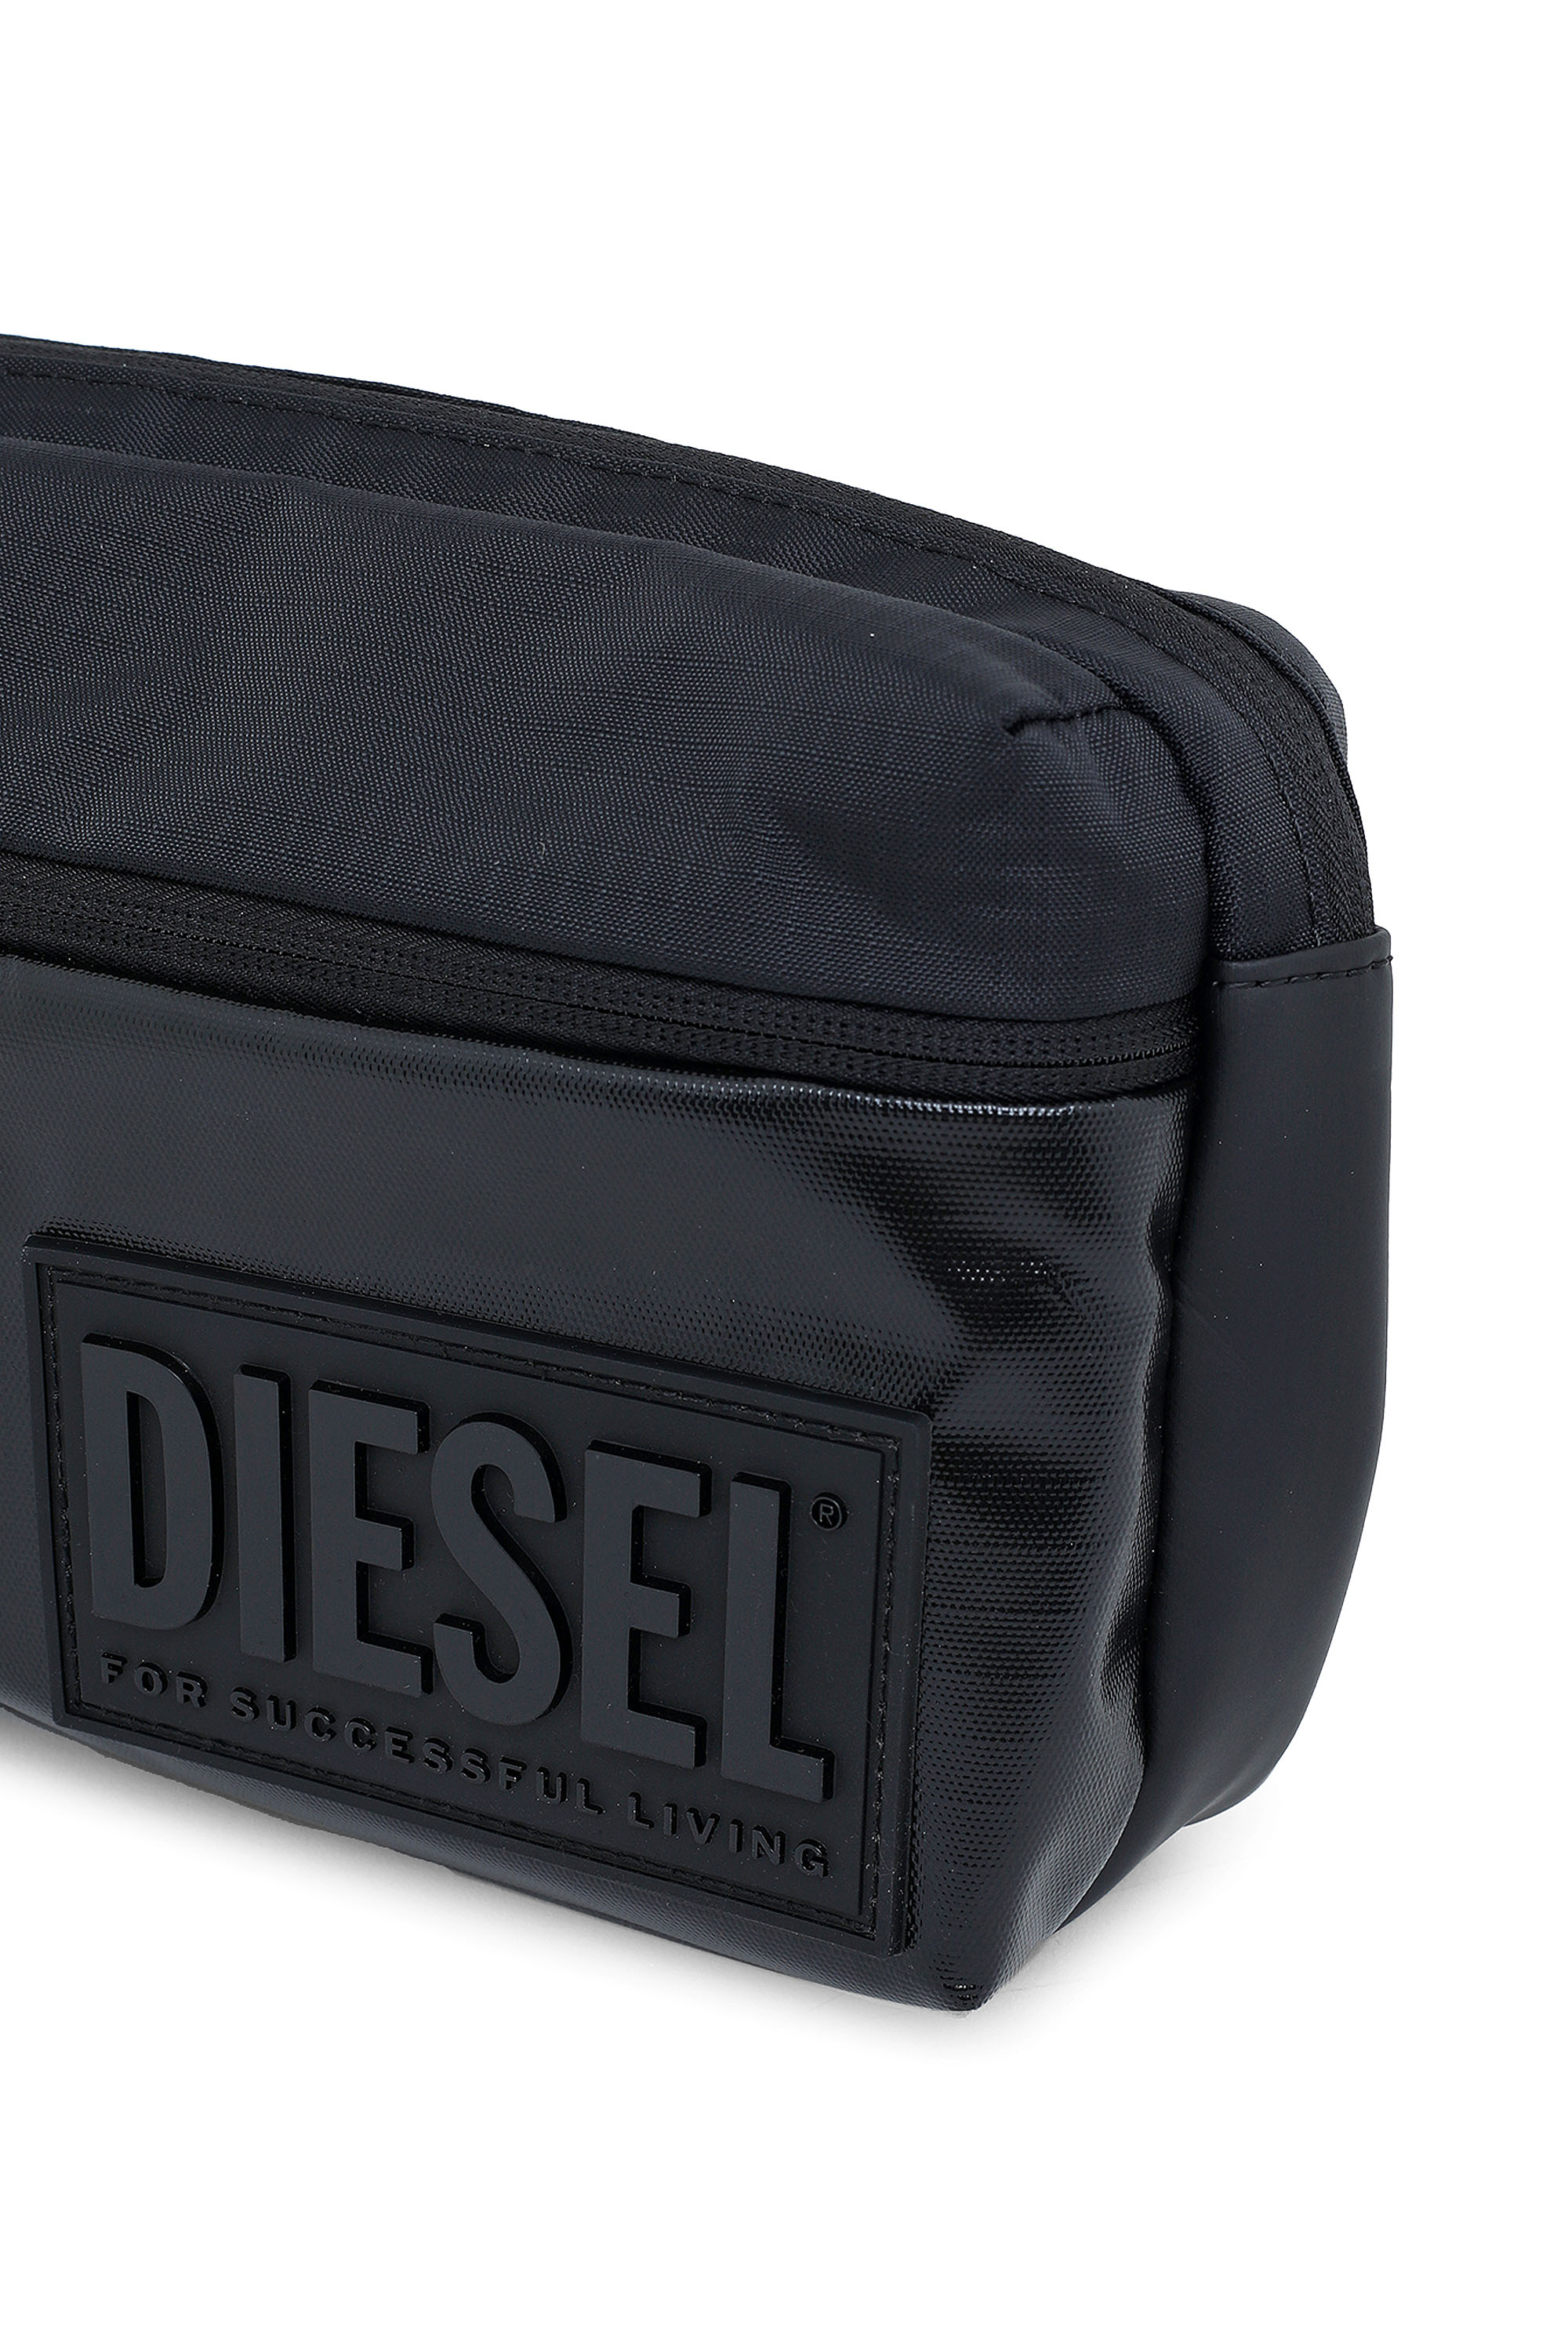 Diesel - BELTYO, Black - Image 5